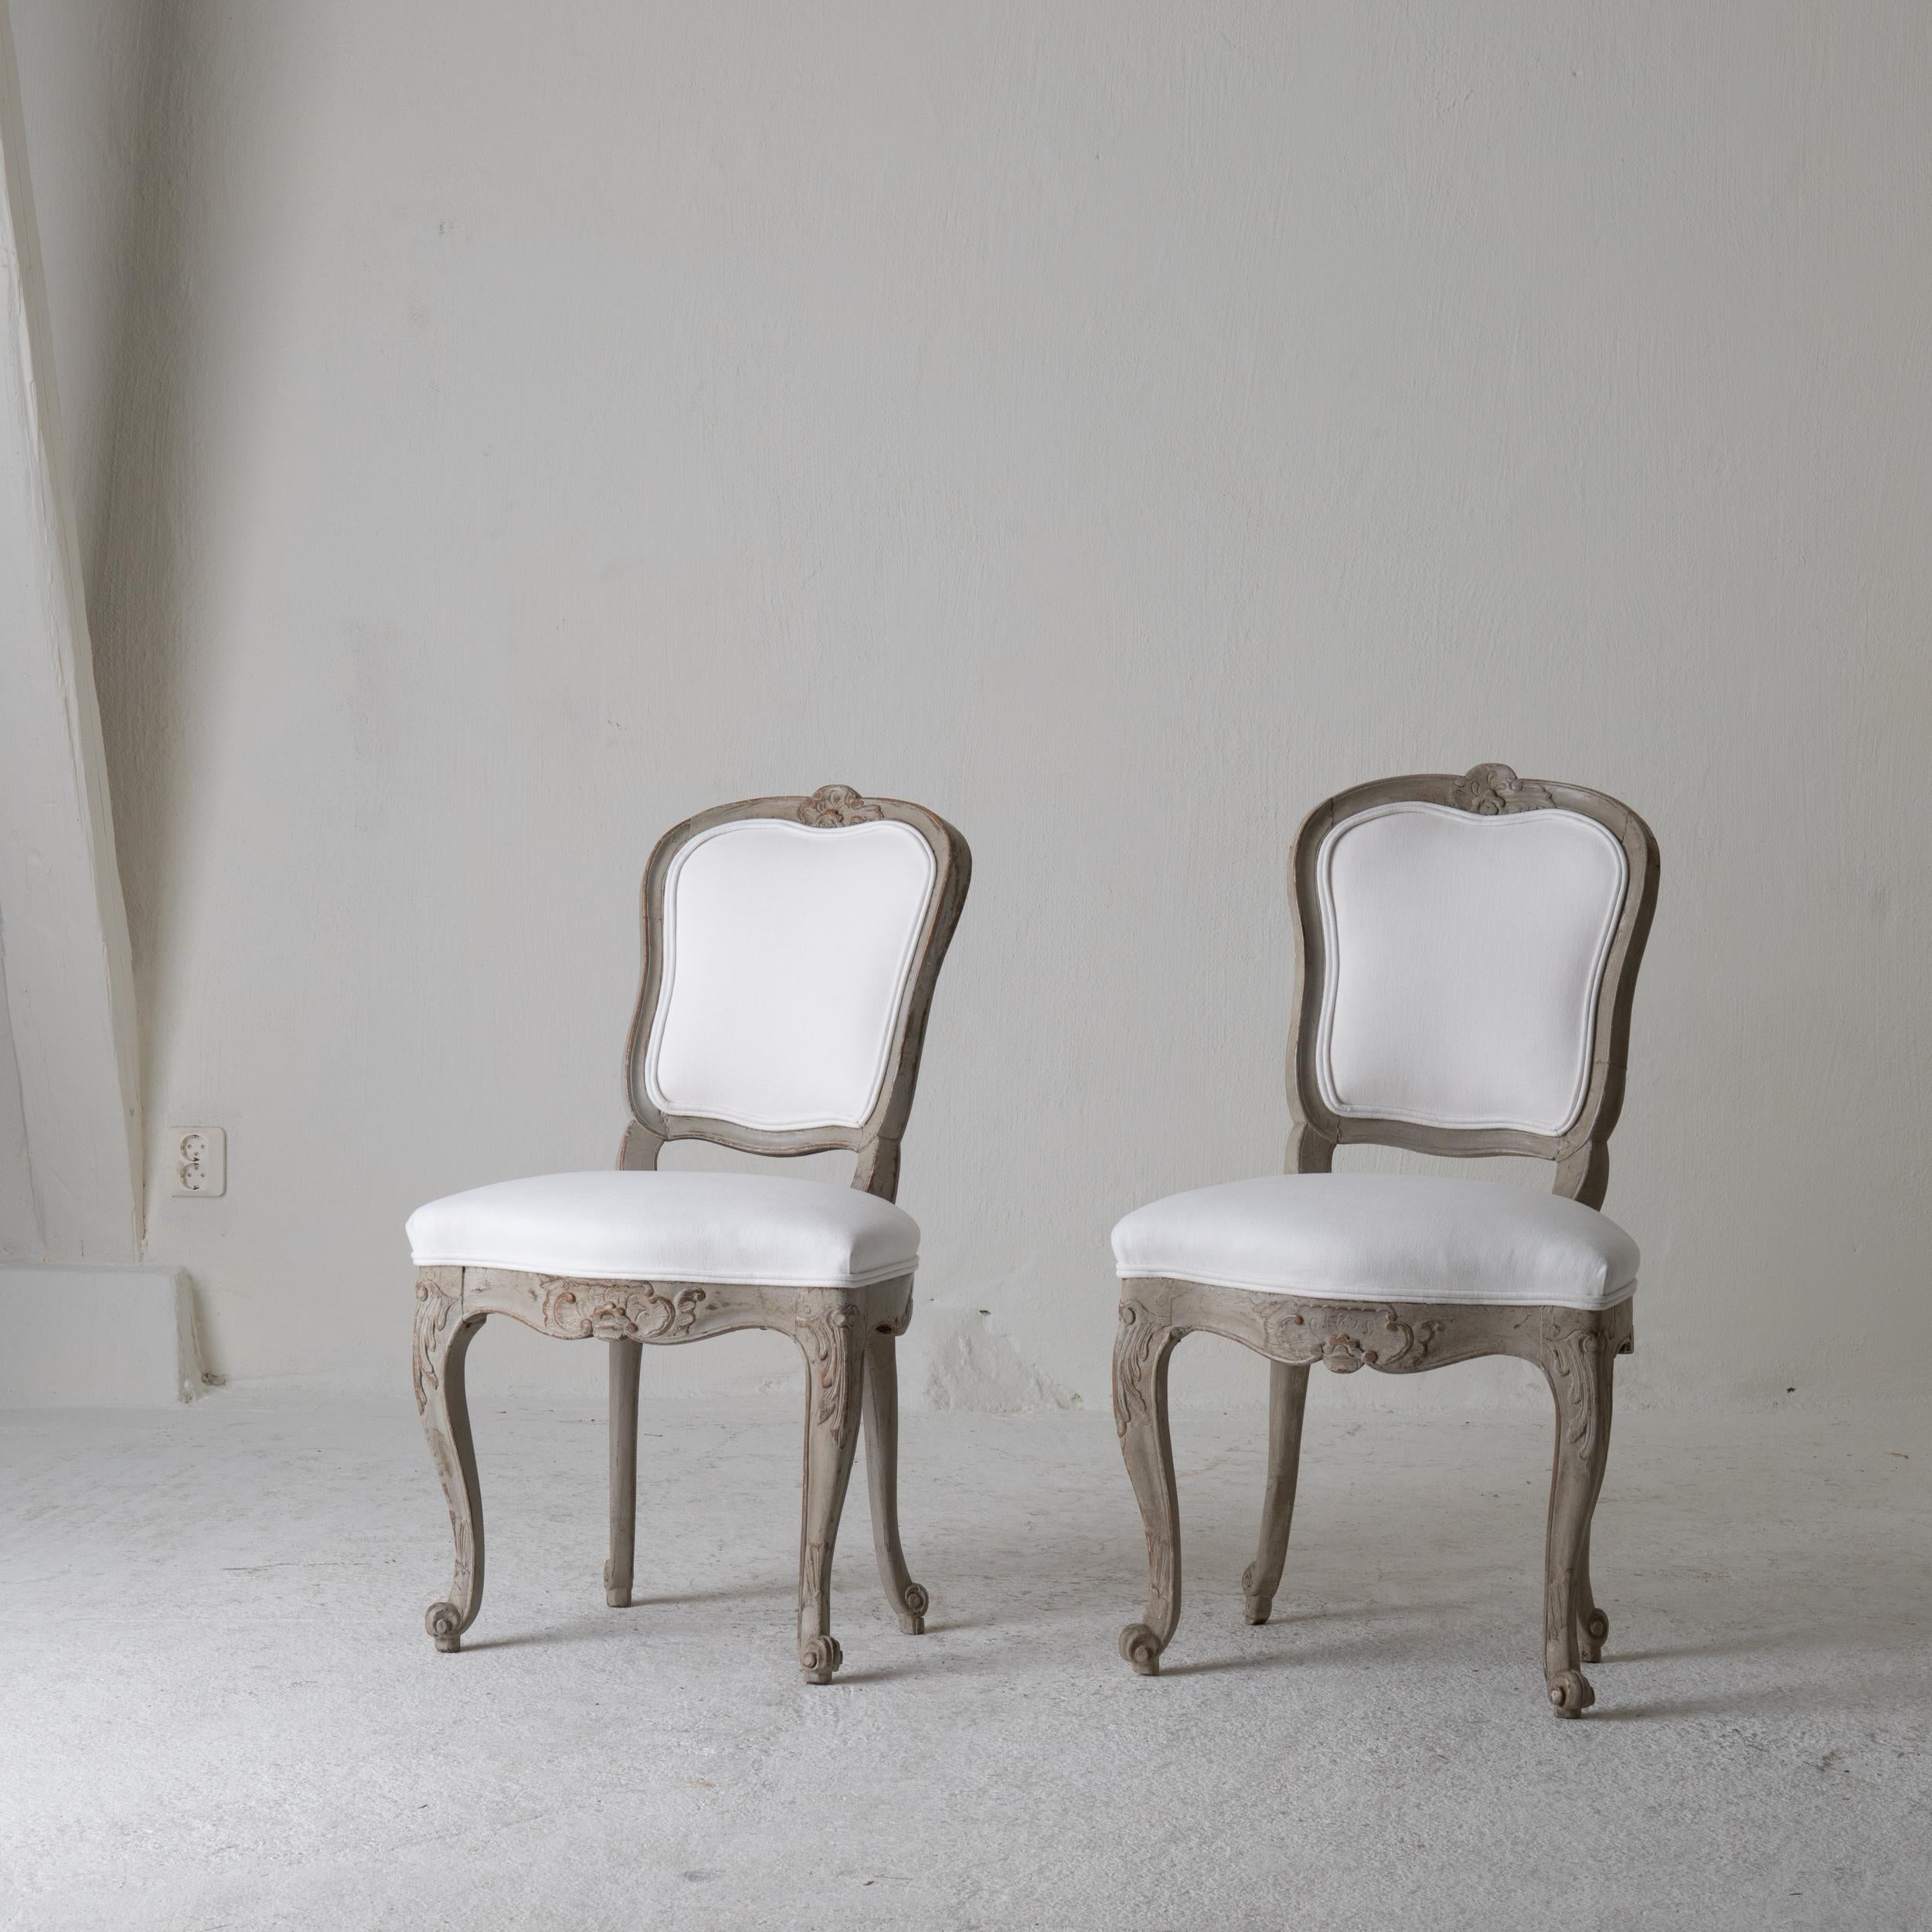 Paire de chaises suédoises Rococo 1750-1775 blanc vert gris, Suède. Une paire de chaises d'appoint fabriquées pendant la période rococo 1750-1775 en Suède. Peint dans un gris verdâtre et tapissé d'un doux tissu de coton blanc. Détails sculptés de